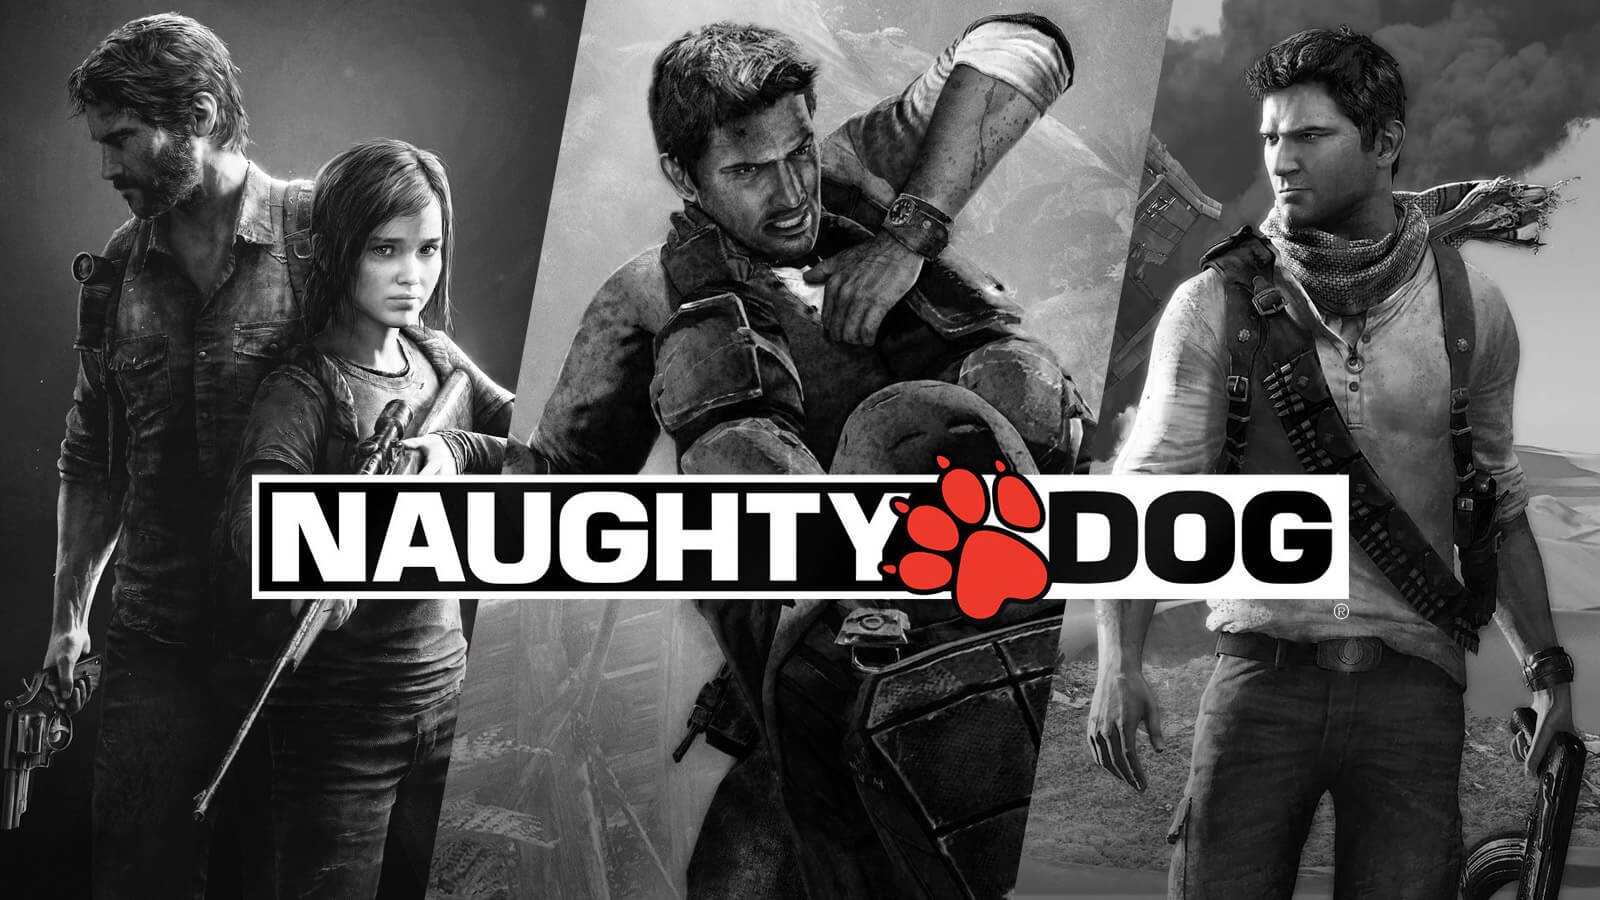 I migliori giochi Naughty Dog: dalle origini a The Last of Us Part II